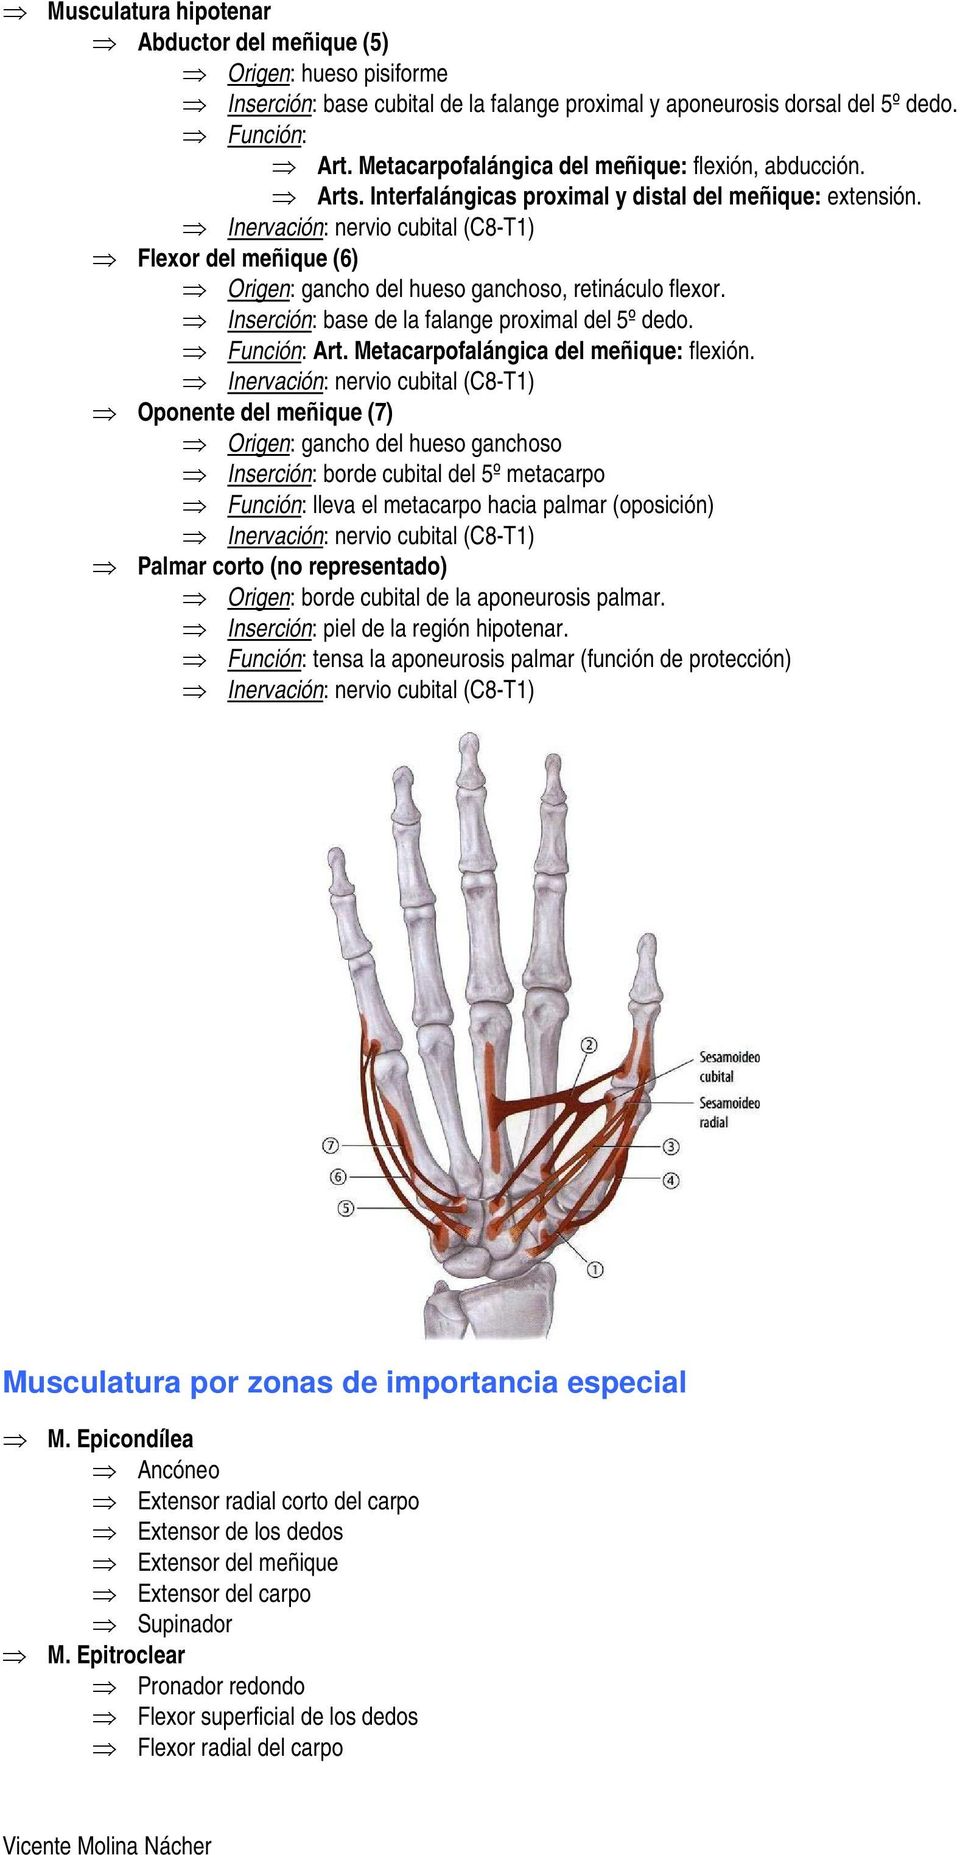 Inserción: base de la falange proximal del 5º dedo. Art. Metacarpofalángica del meñique: flexión.